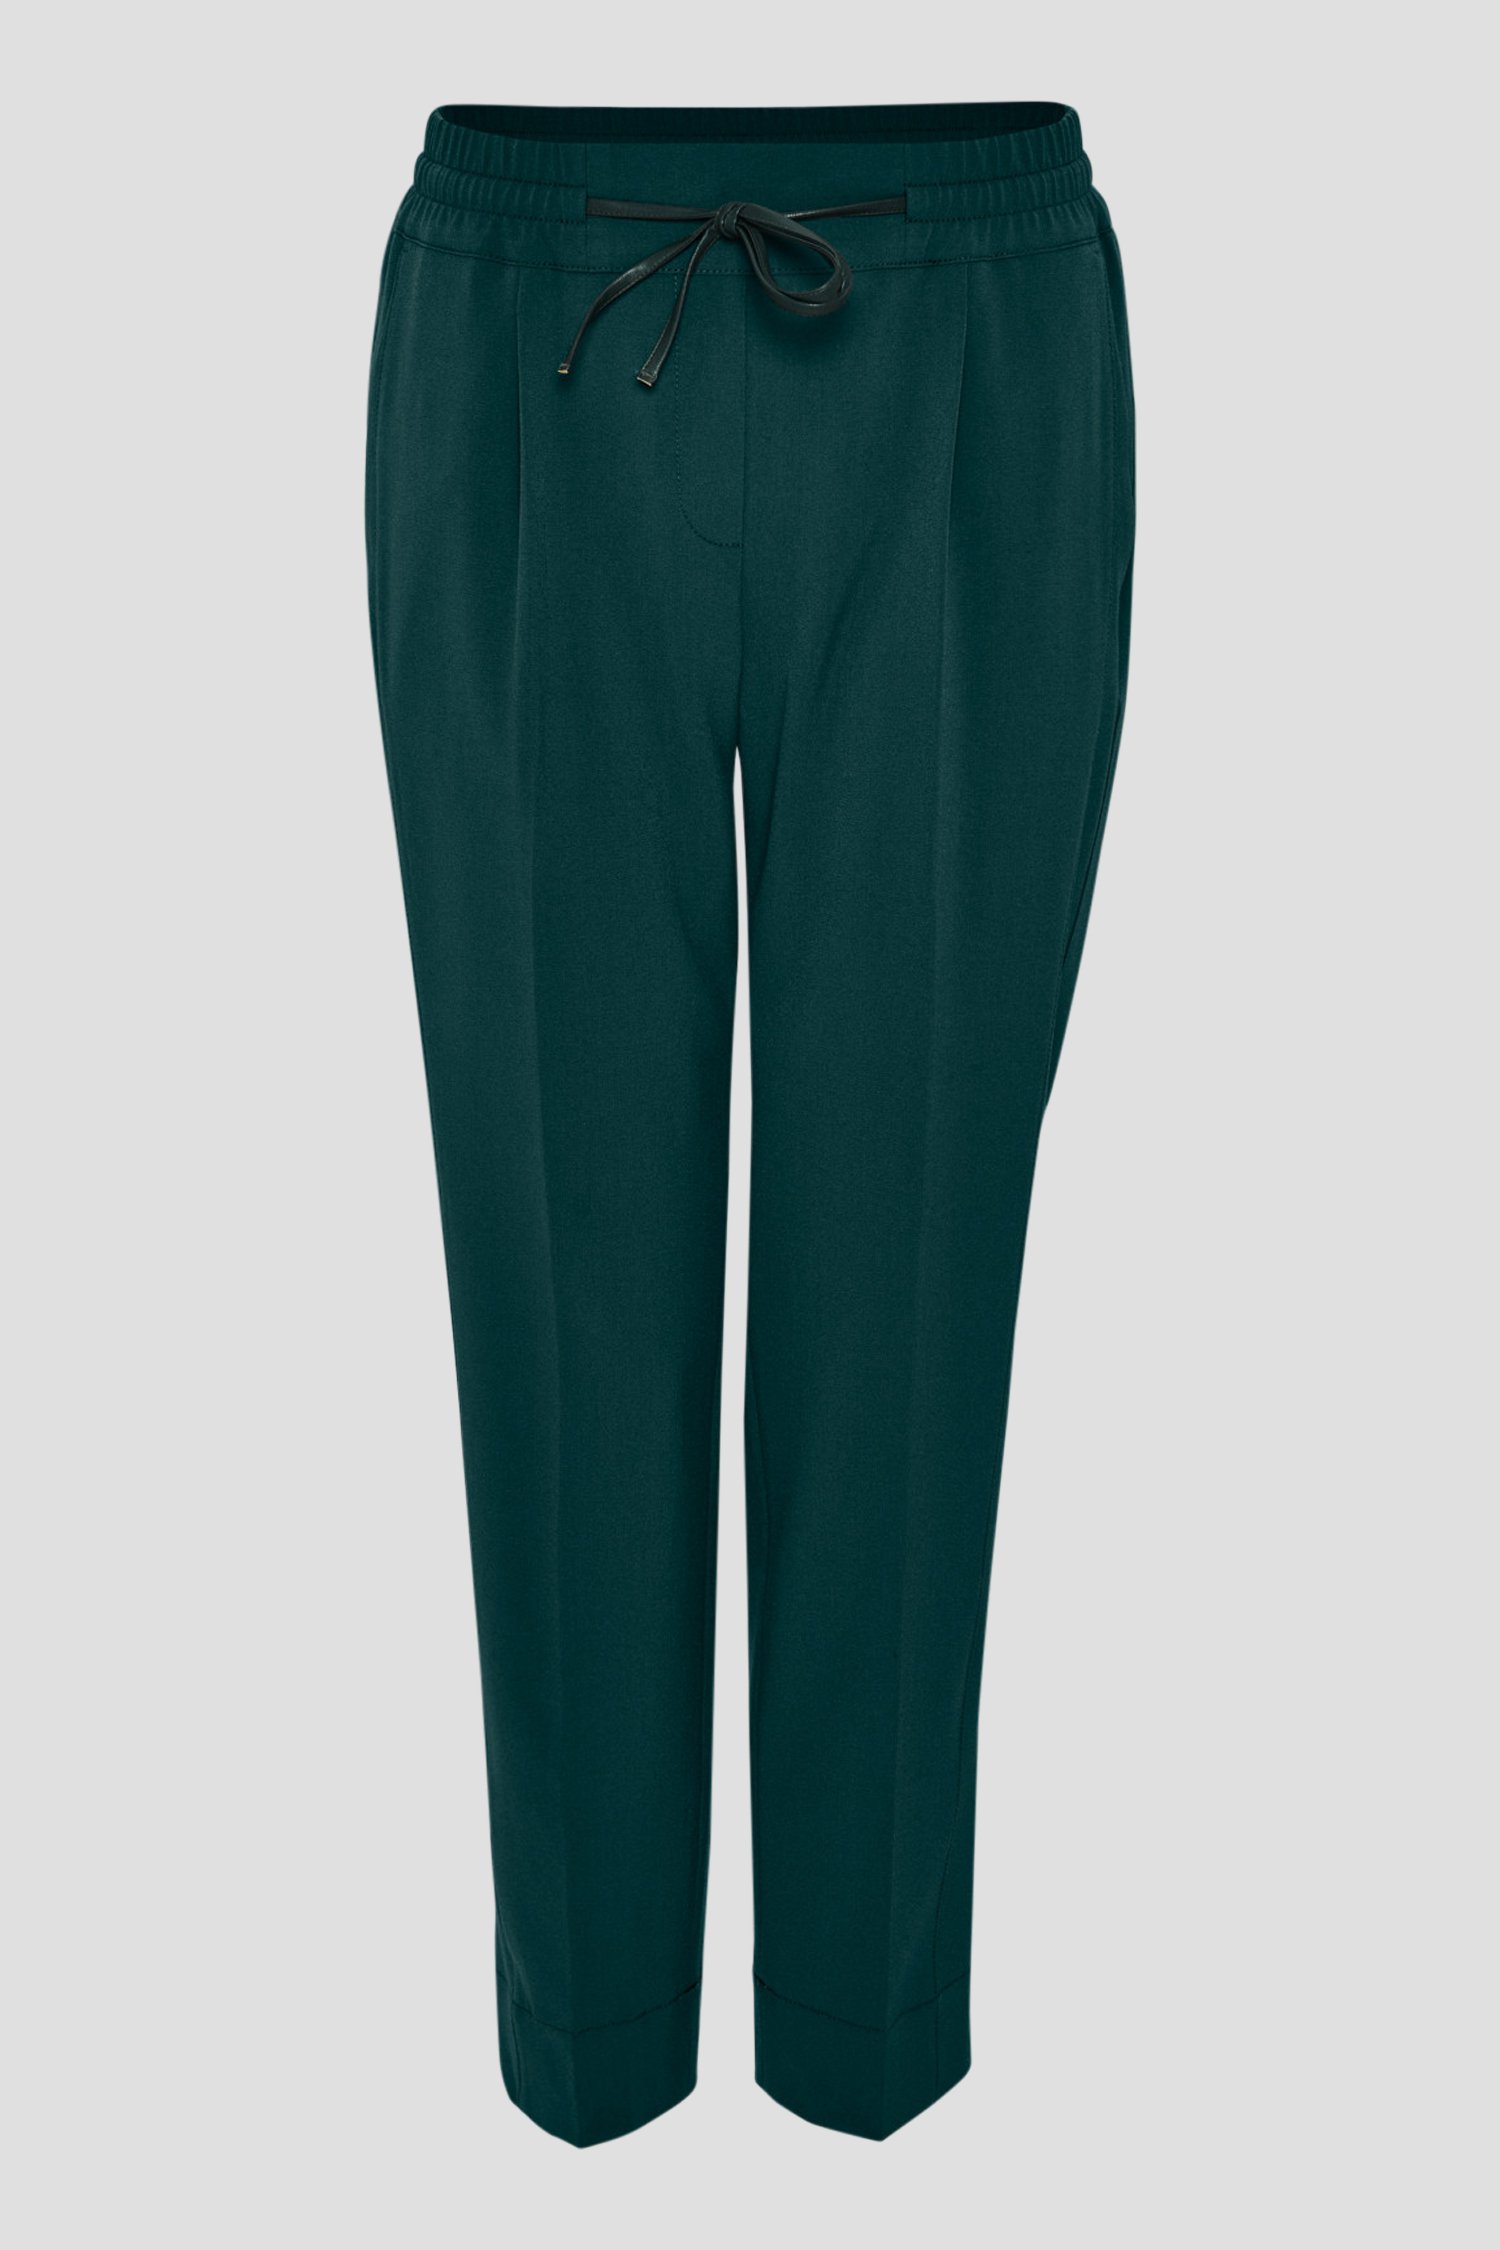 Pantalon habillé bleu-vert de Opus pour Femmes